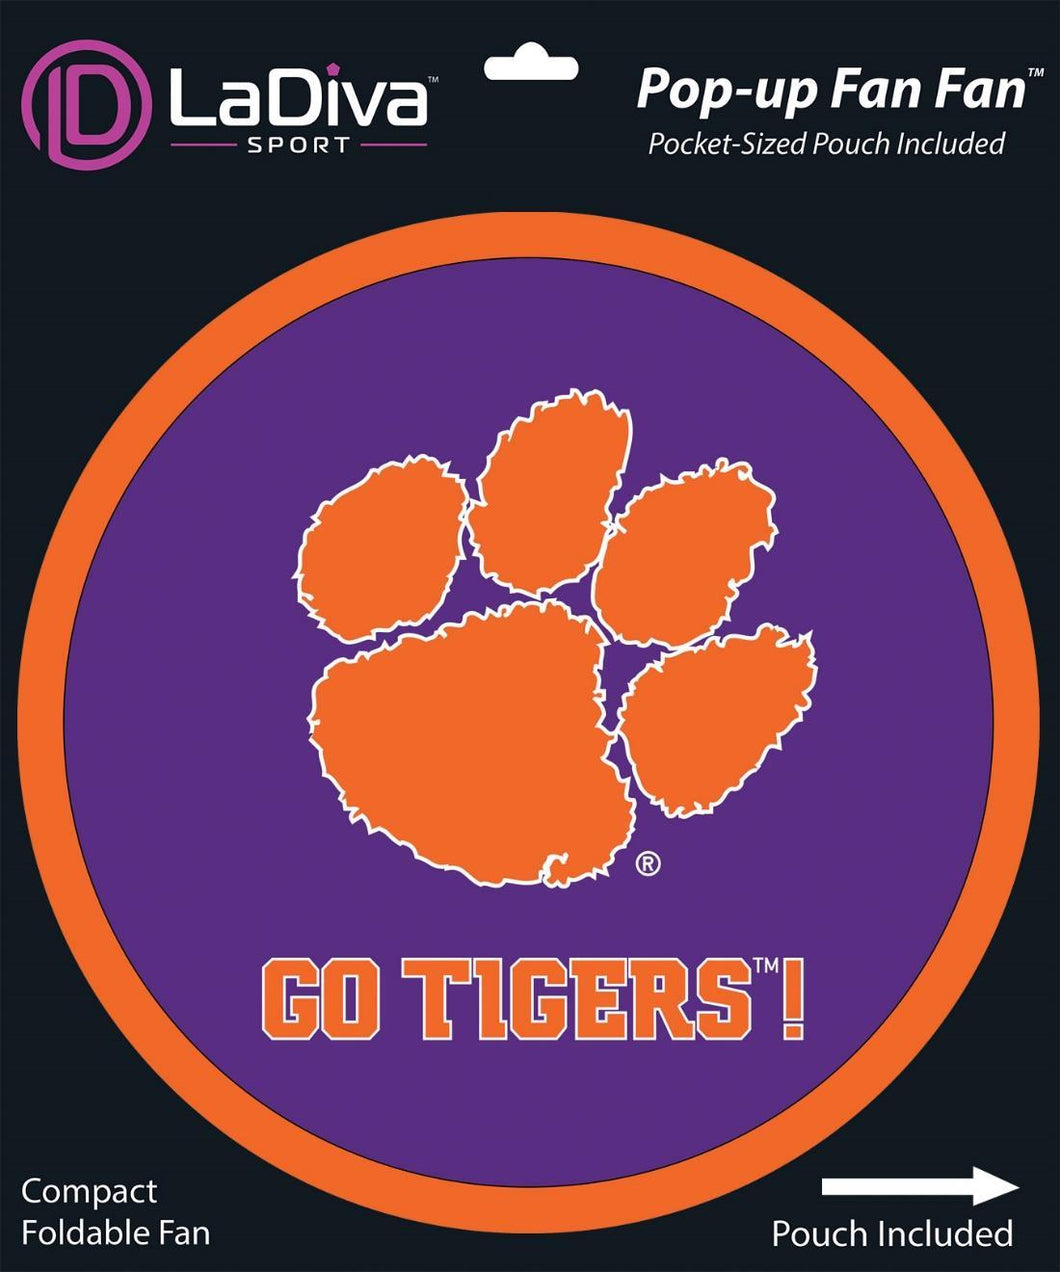 Clemson University CU Tigers~Pop-Up Fan Fan with Pouch